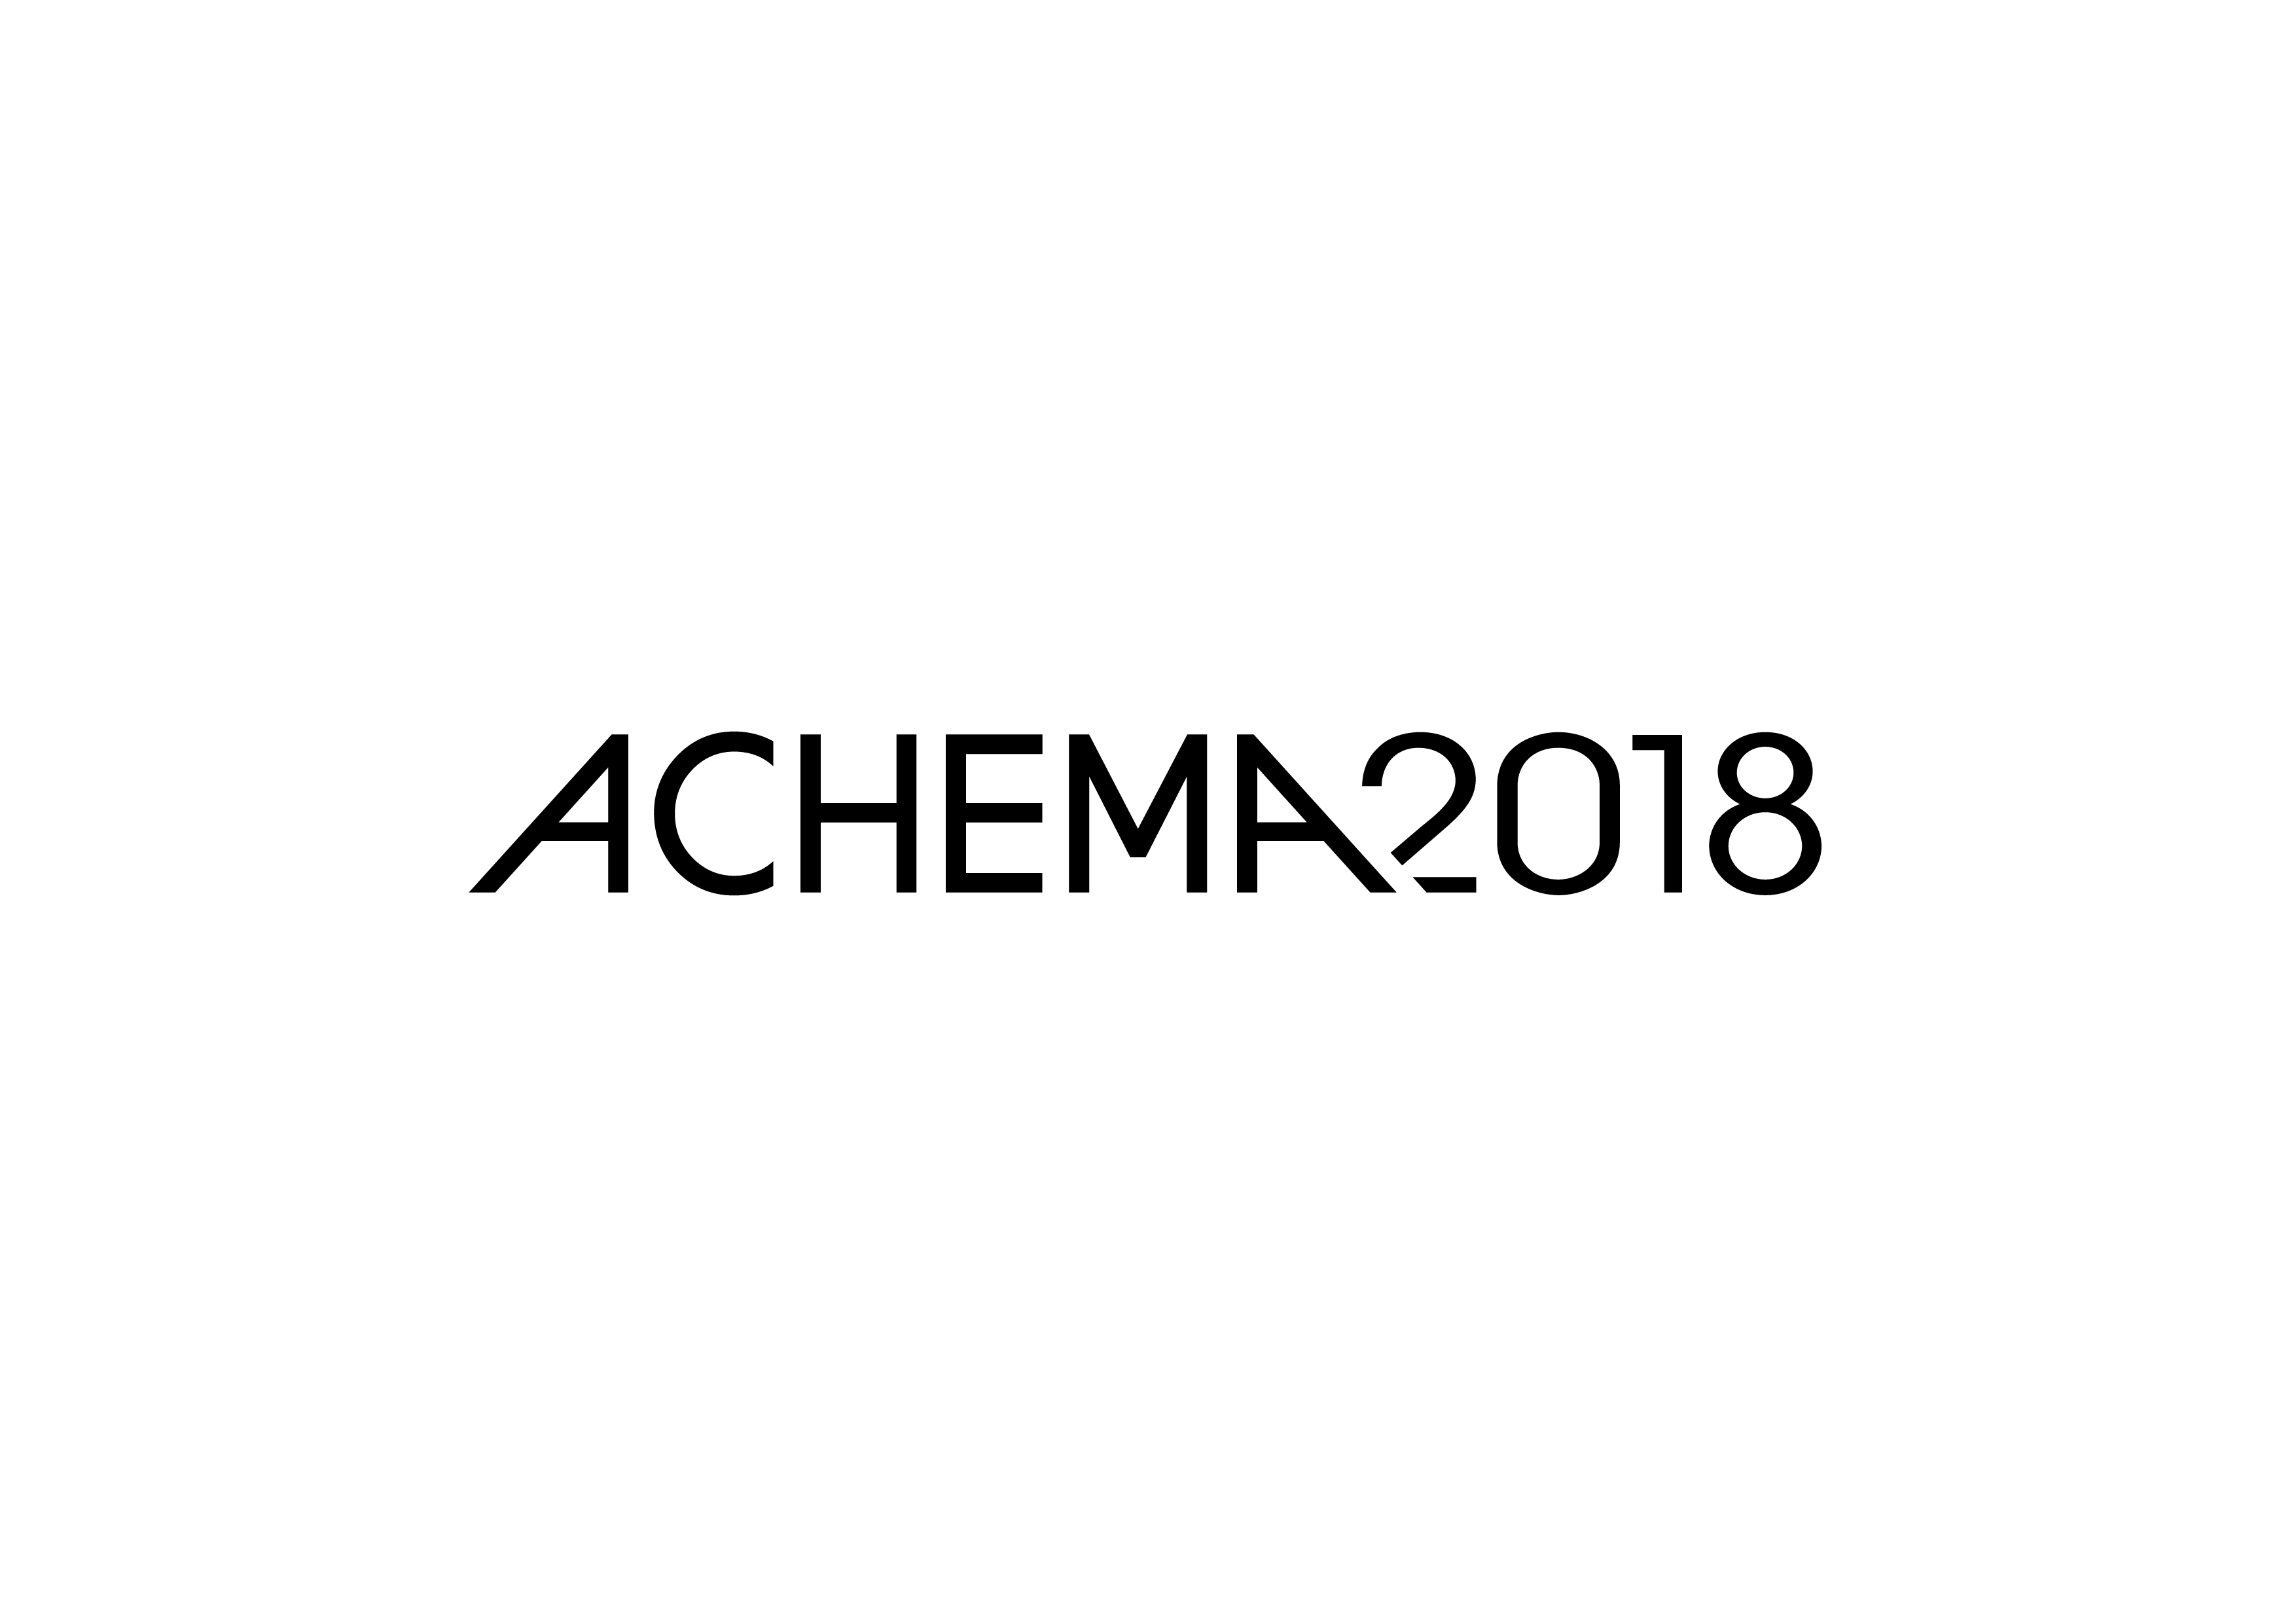 Achema 2018